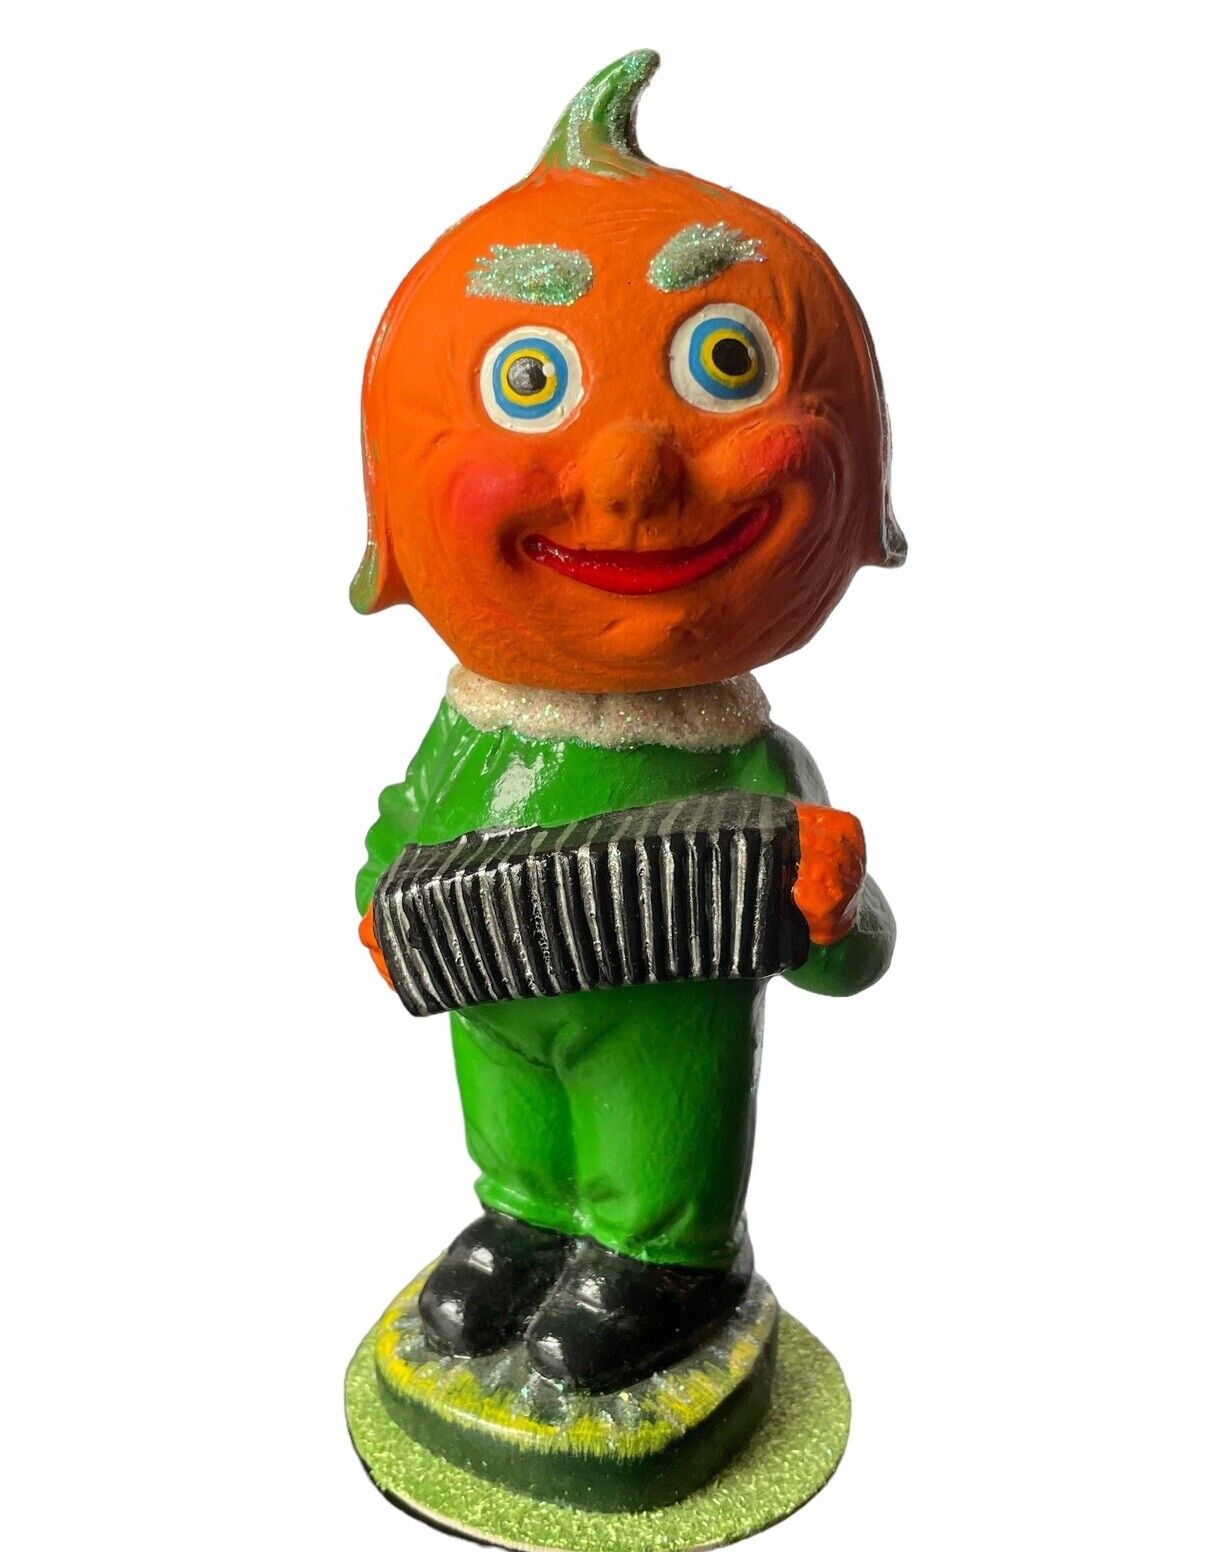 1995 Ino Schaller Radko Pumpkin Boy Bobblehead Candy Holder Halloween Accordion